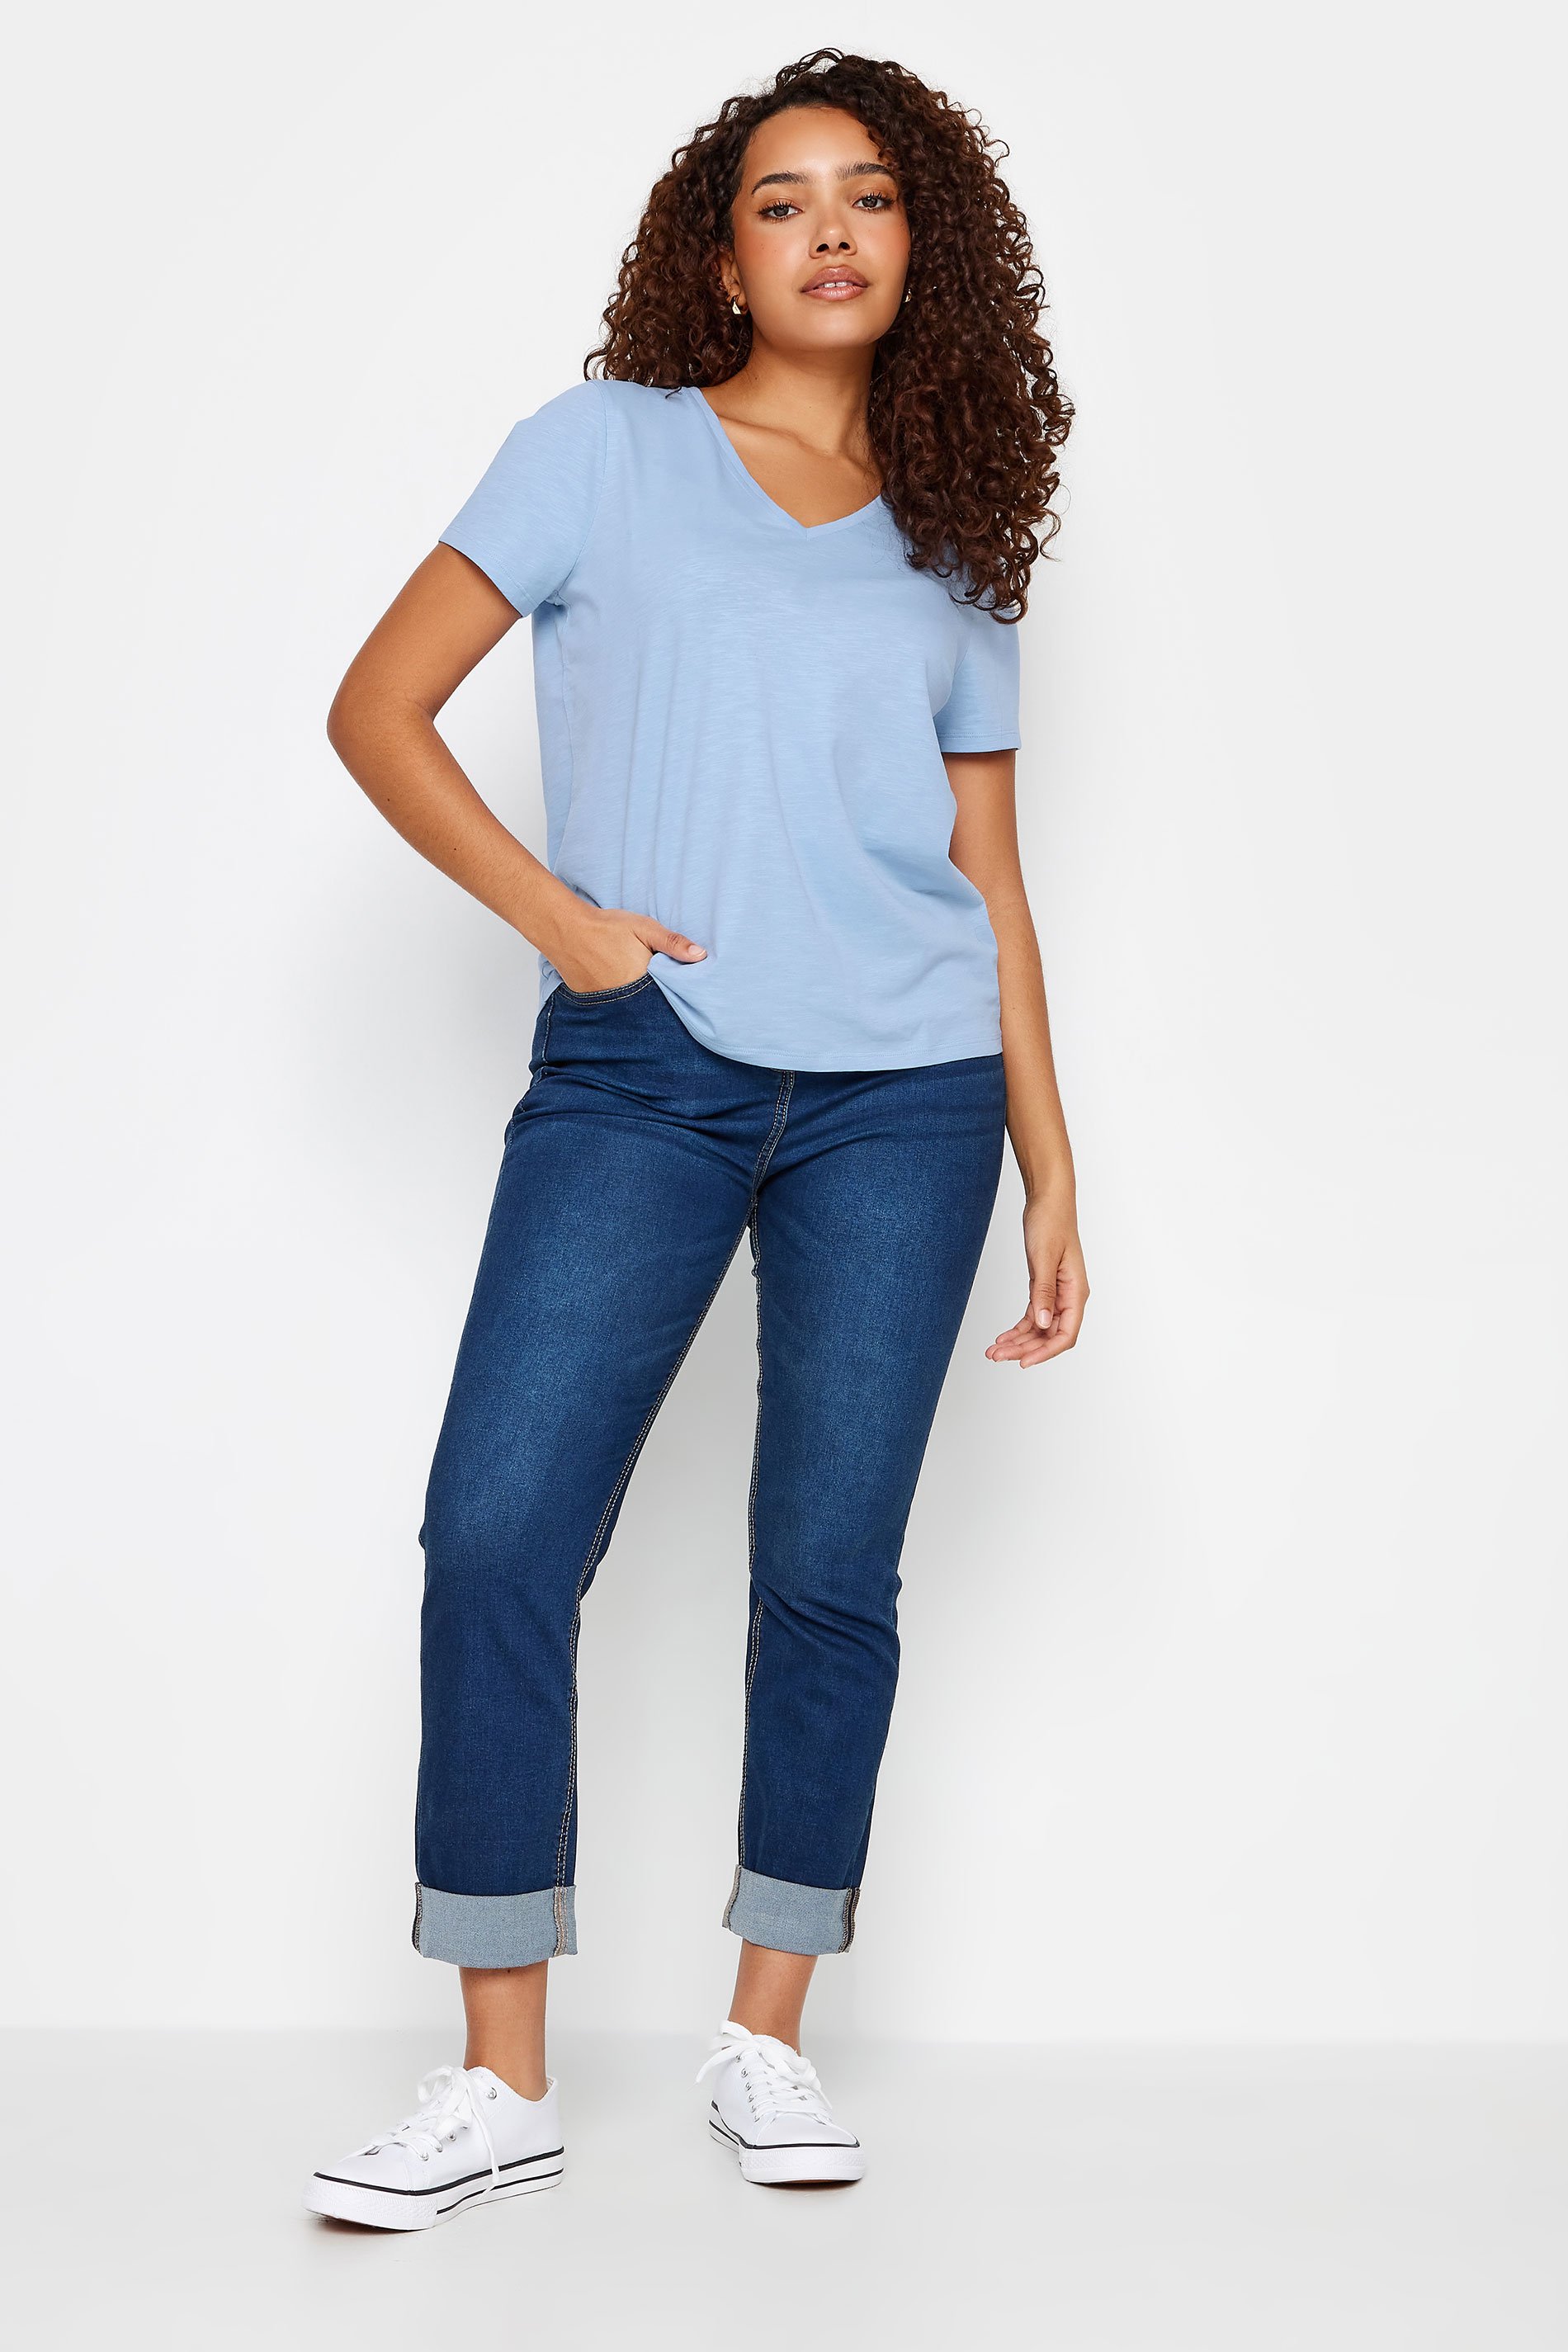 M&Co Blue V-Neck Cotton T-Shirt | M&Co 3